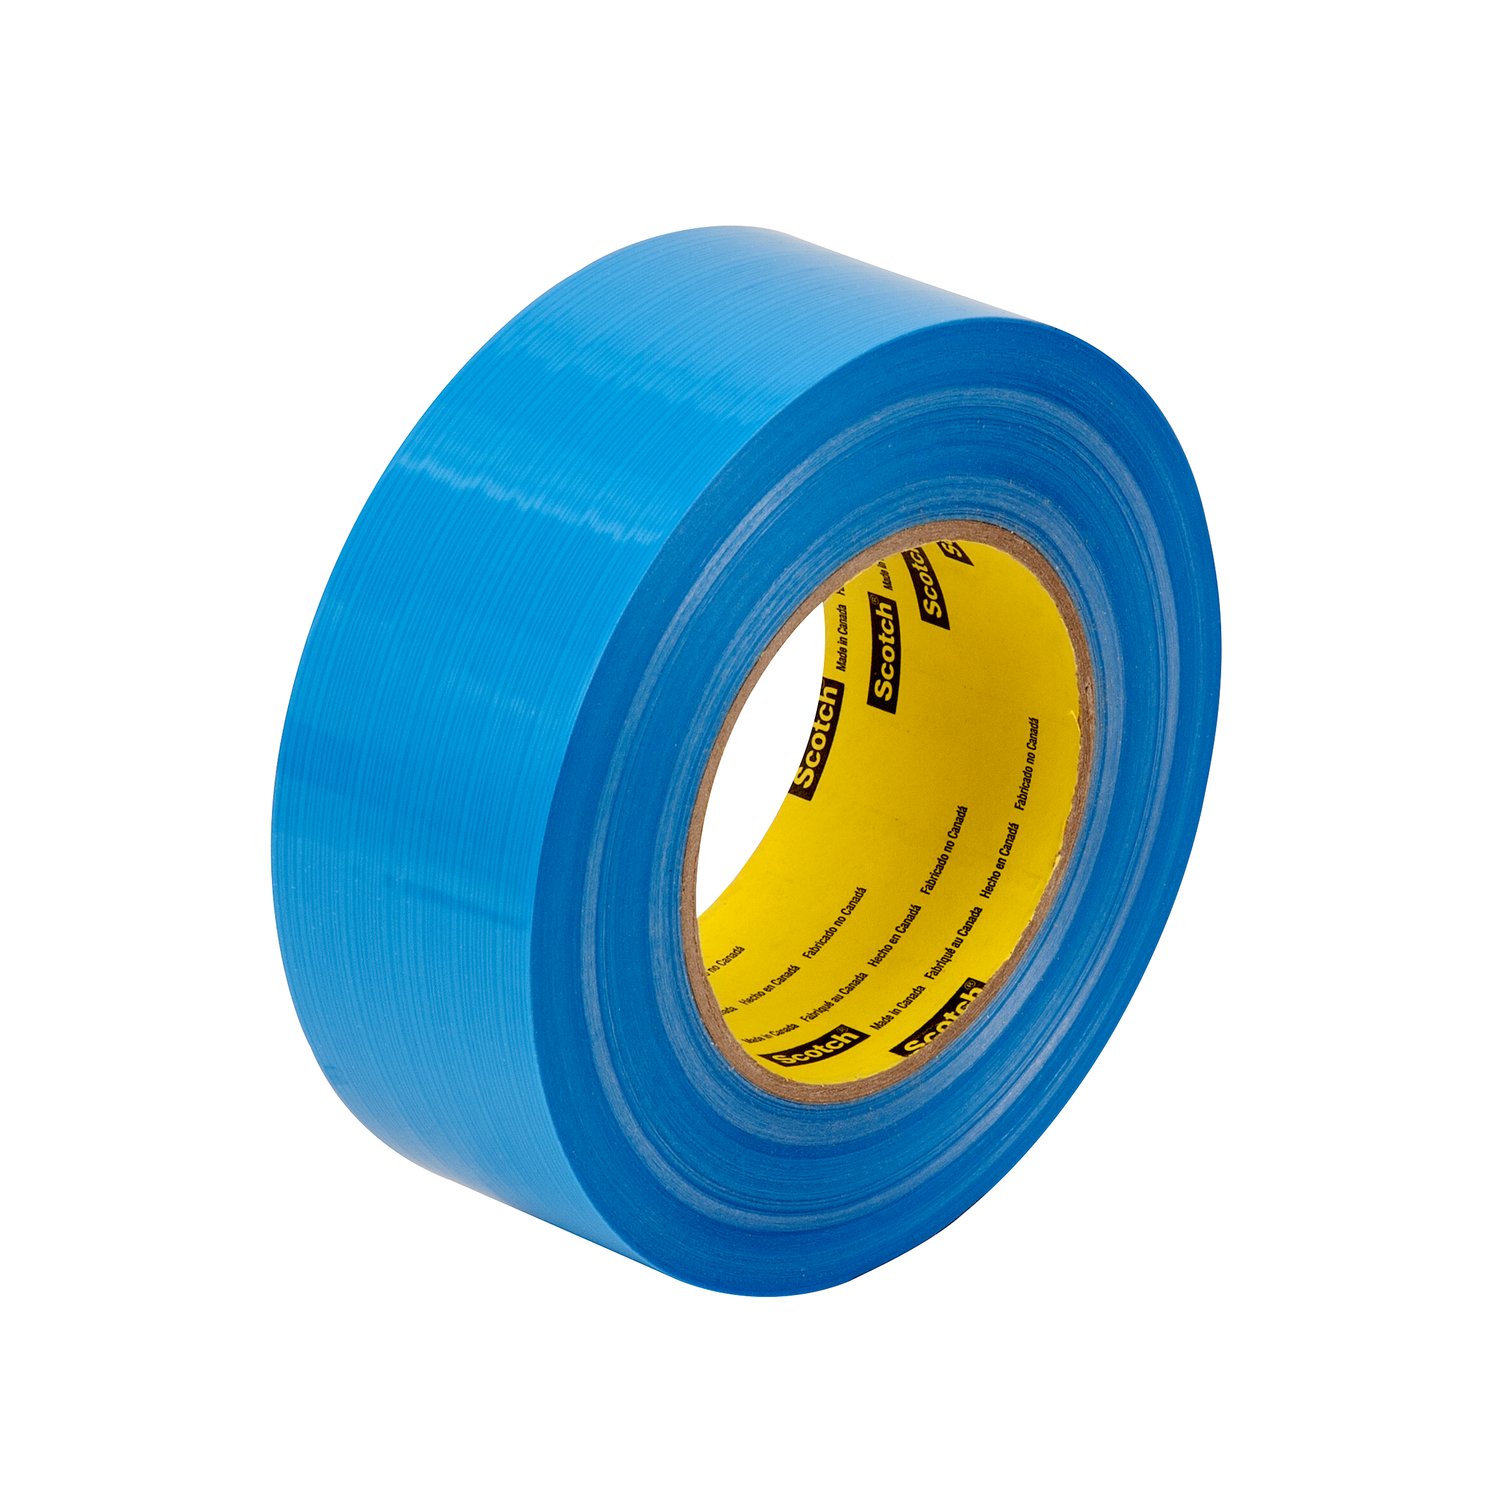 7100115258 - Scotch Filament Tape 8916V, Blue, 72 mm x 55 m, 6.8 mil, 12 rolls per
case